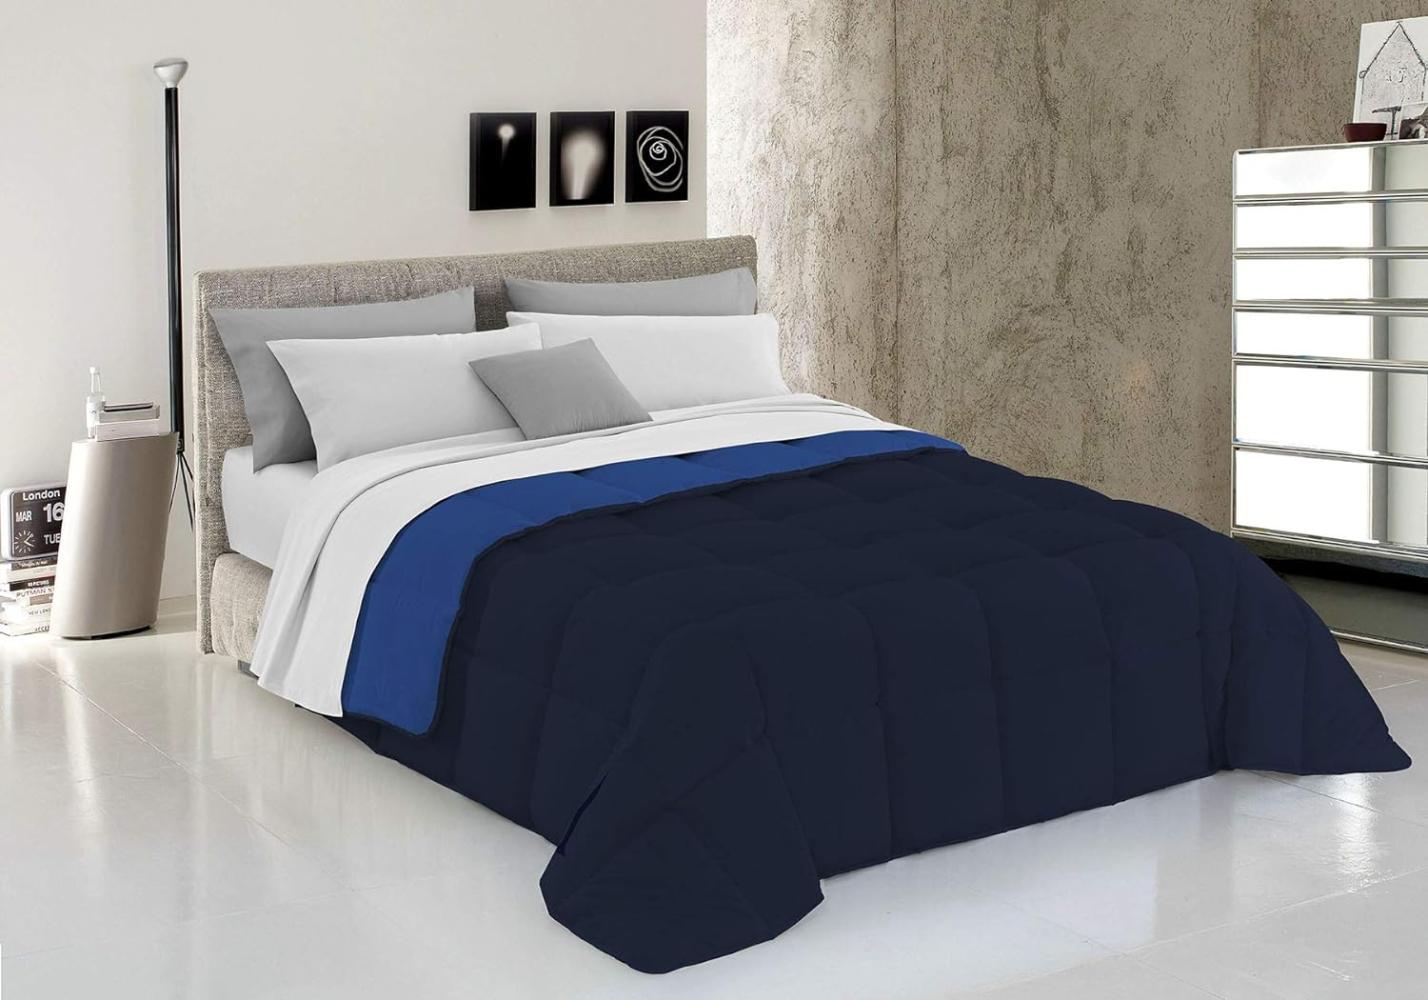 Italian Bed Linen Wintersteppdecke Elegant, Dunkel Blau, Doppelte, 100% Mikrofaser, Dunkelblau/Royal, 260x260cm Bild 1